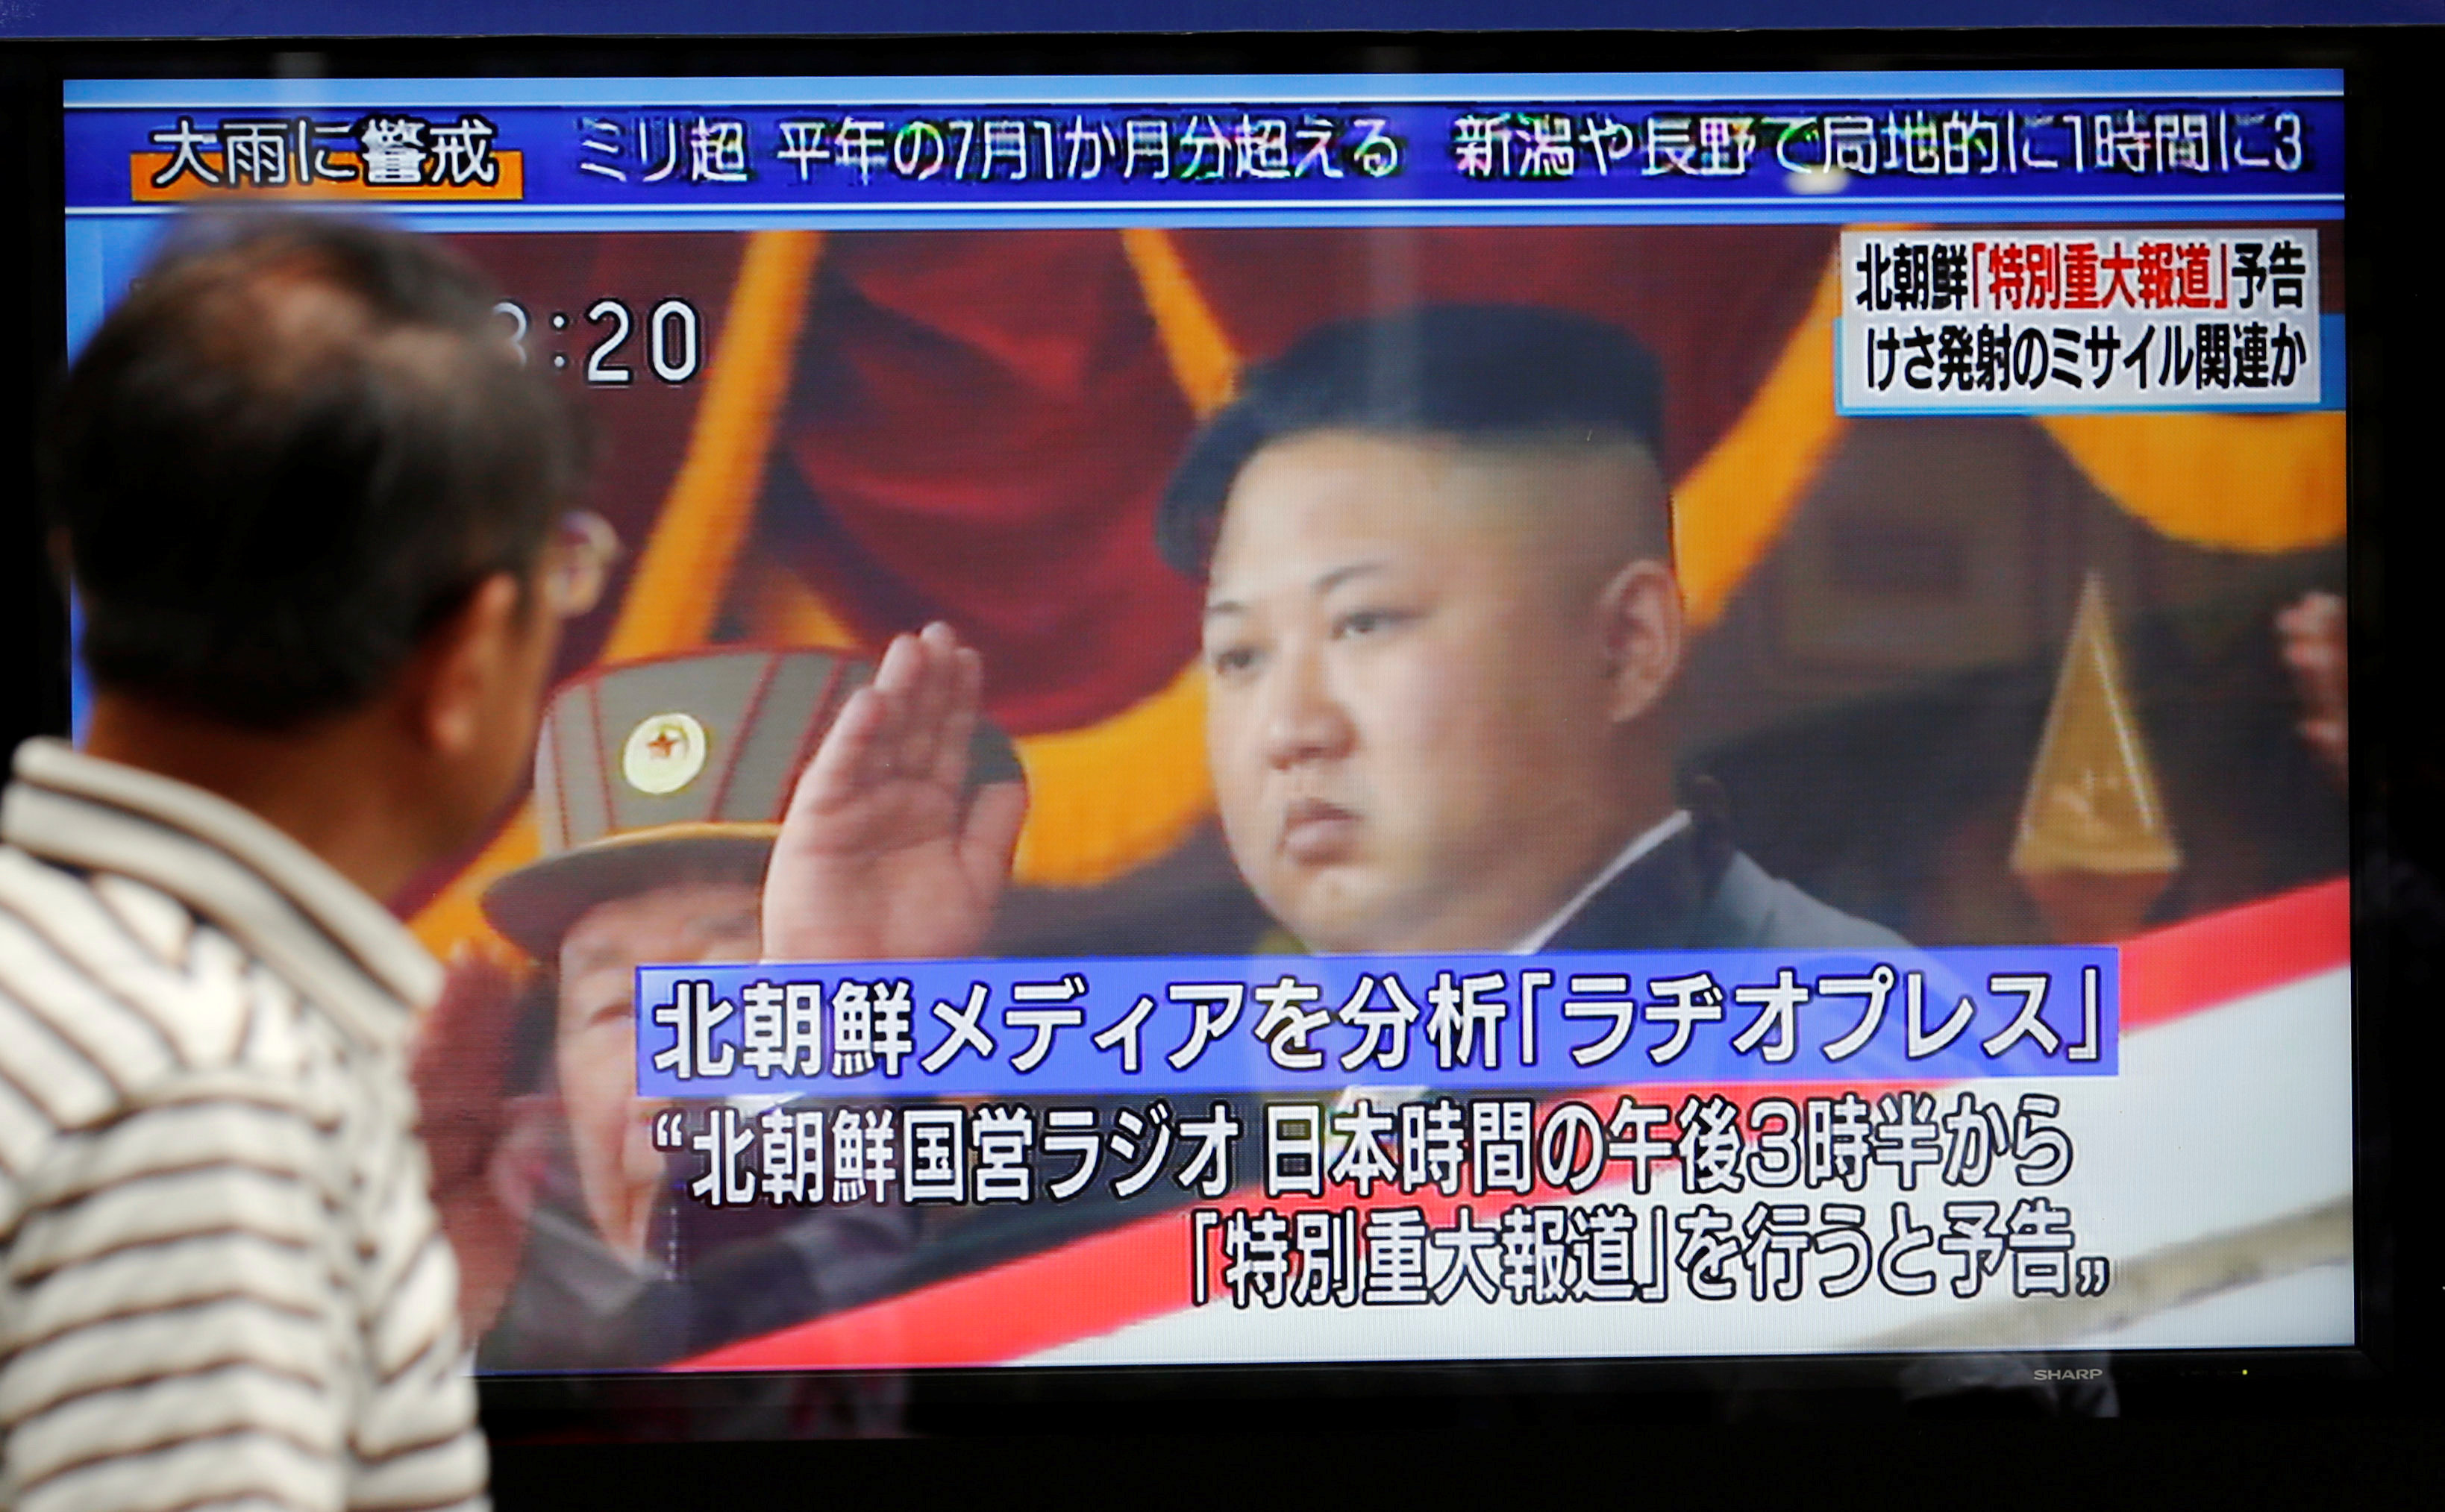 زعيم كوريا الجنوبية يعلن تجربة صاروخية جديدة